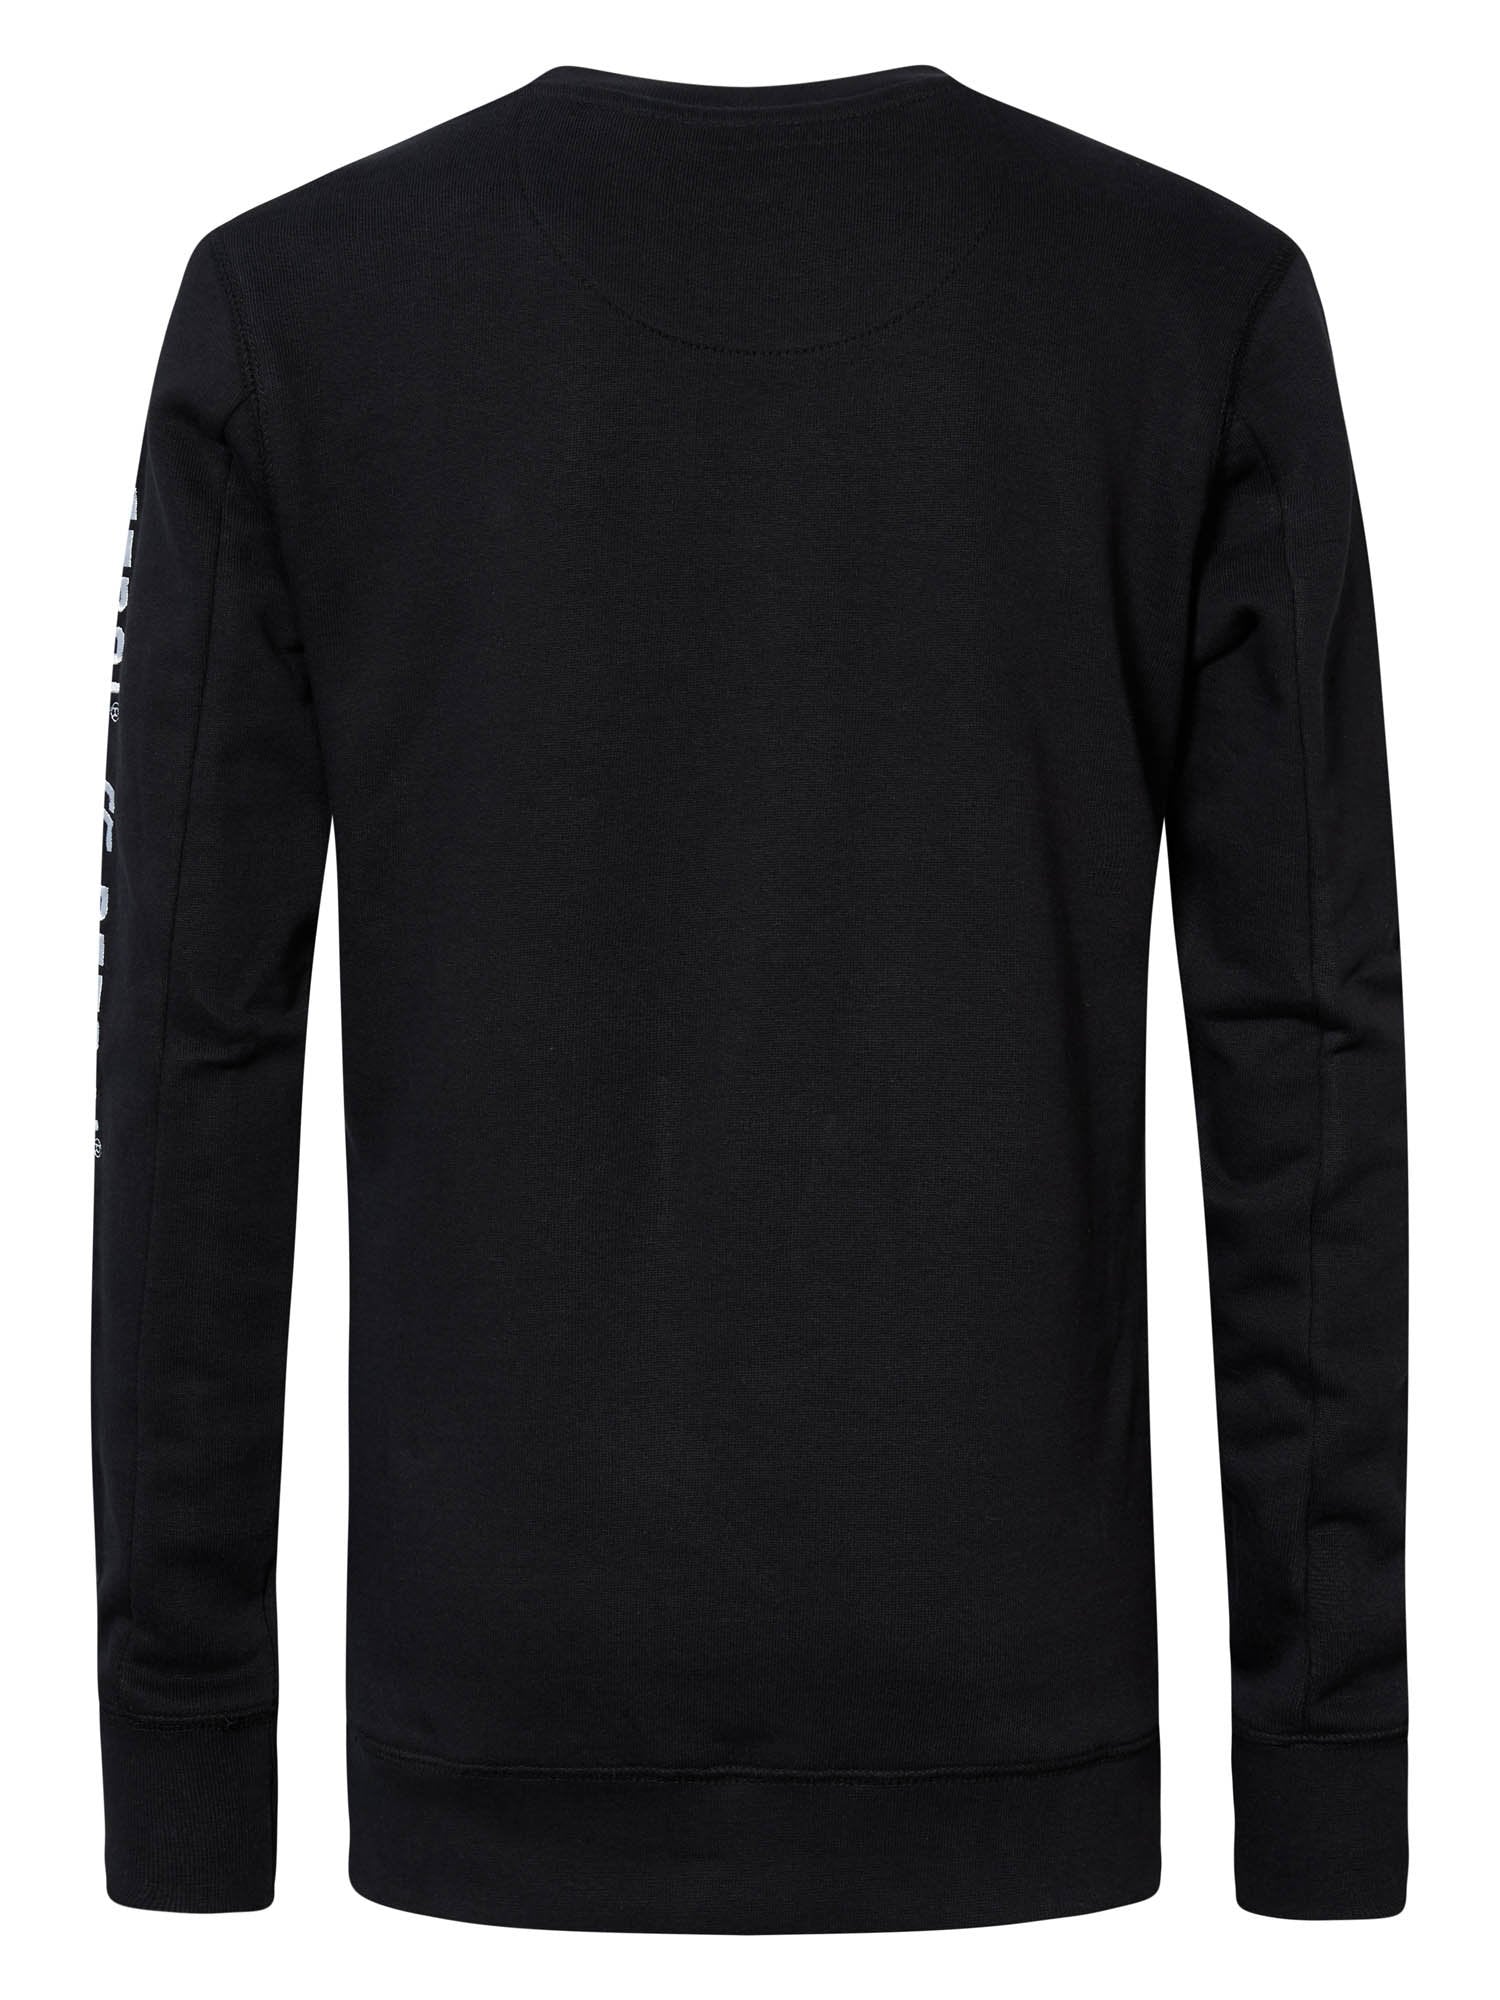 Jongens Sweater Crewneck with Text on Sleeve van Petrol in de kleur Black in maat 164.